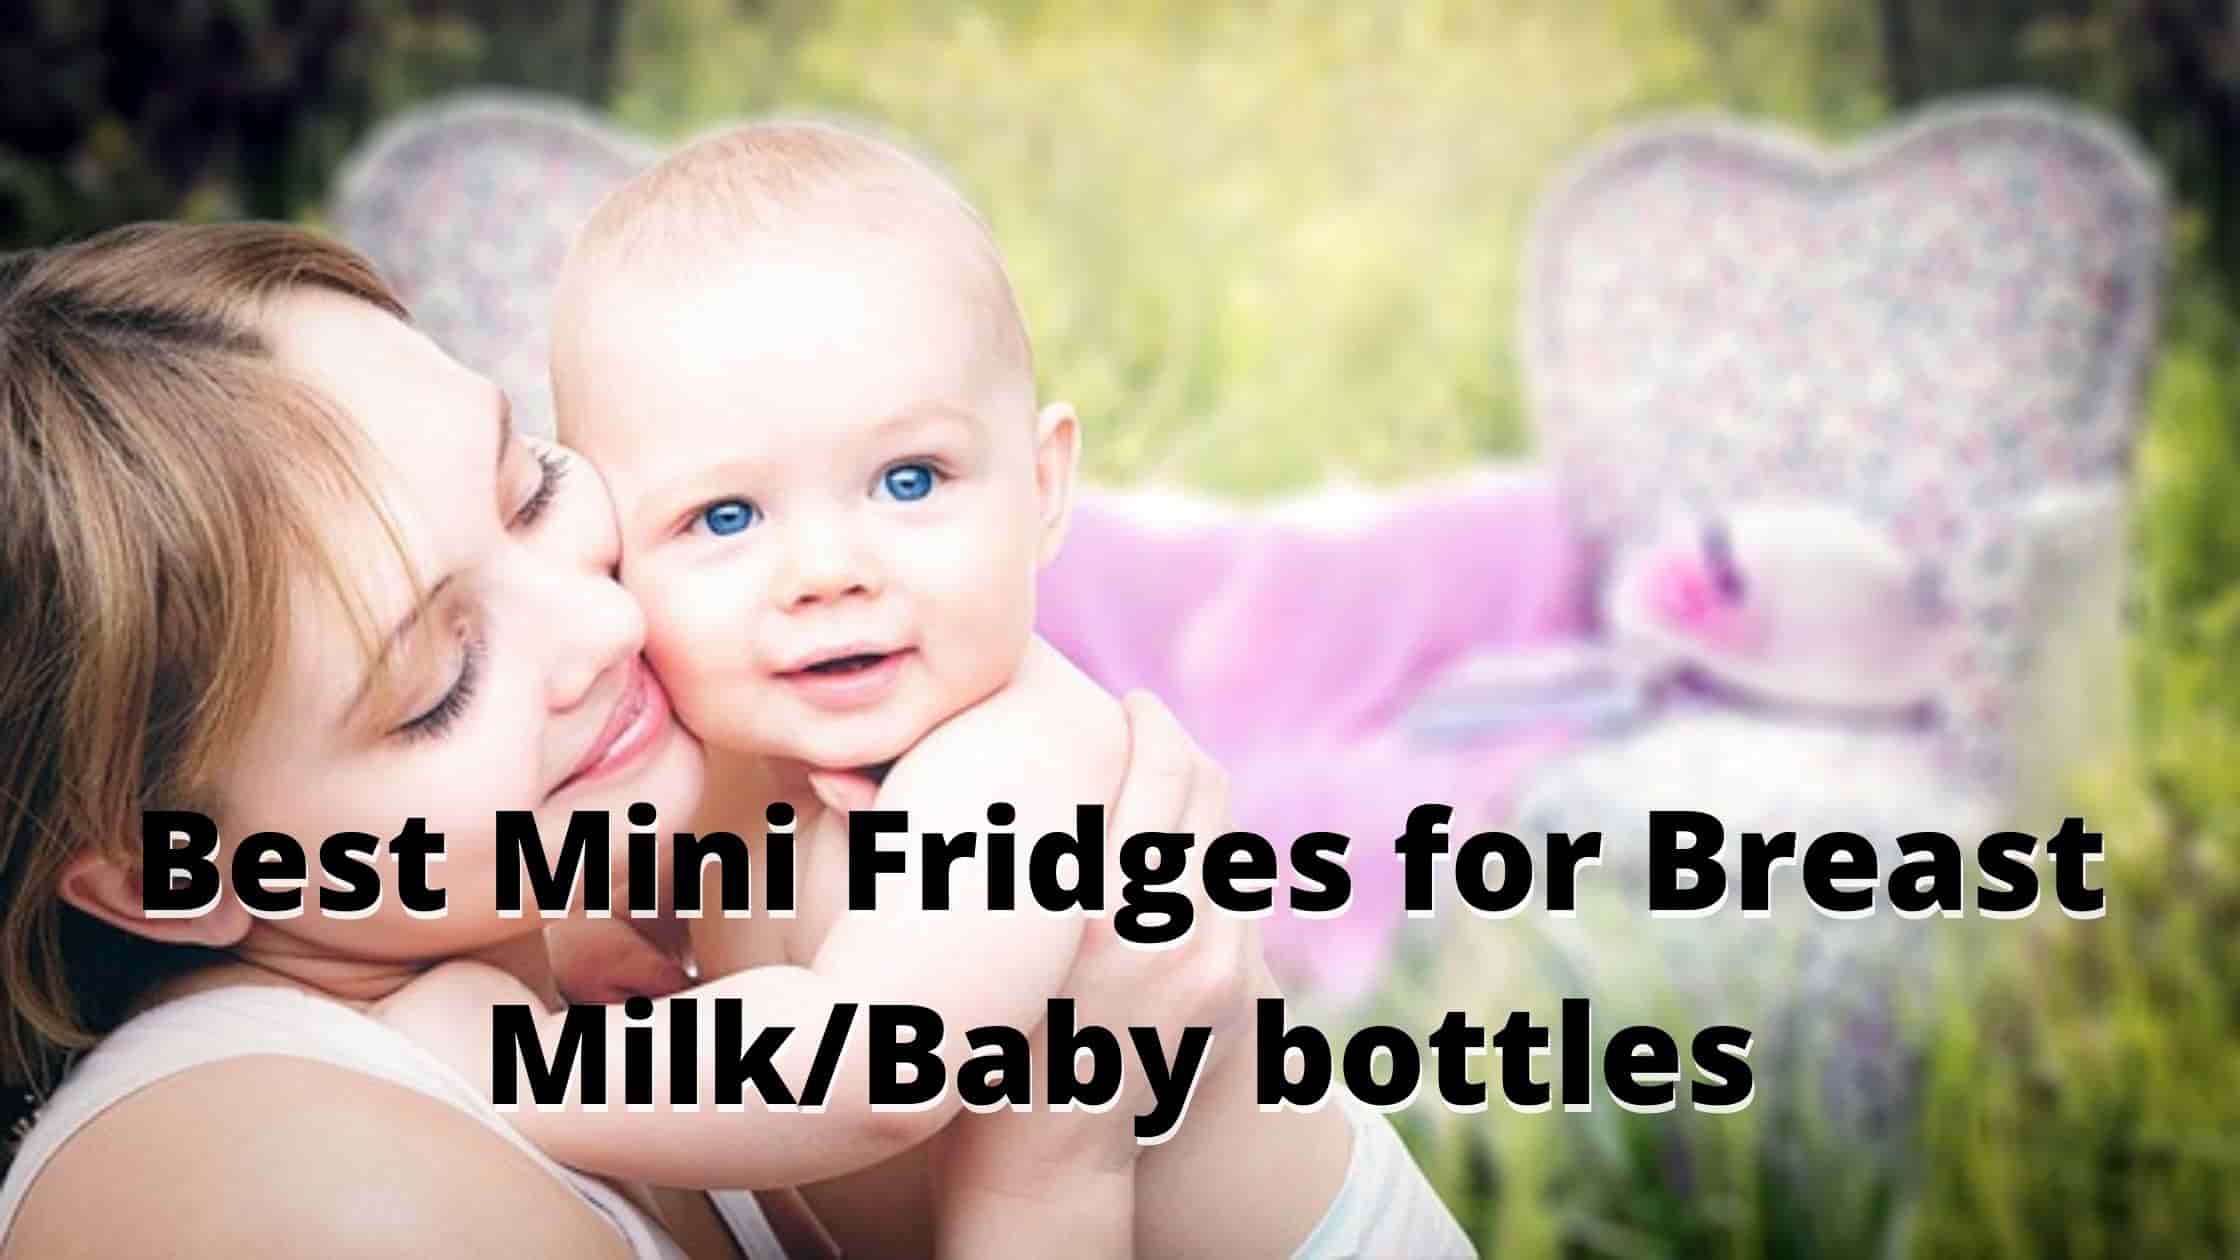 Best Mini Fridges for Breast Milk & Baby bottles